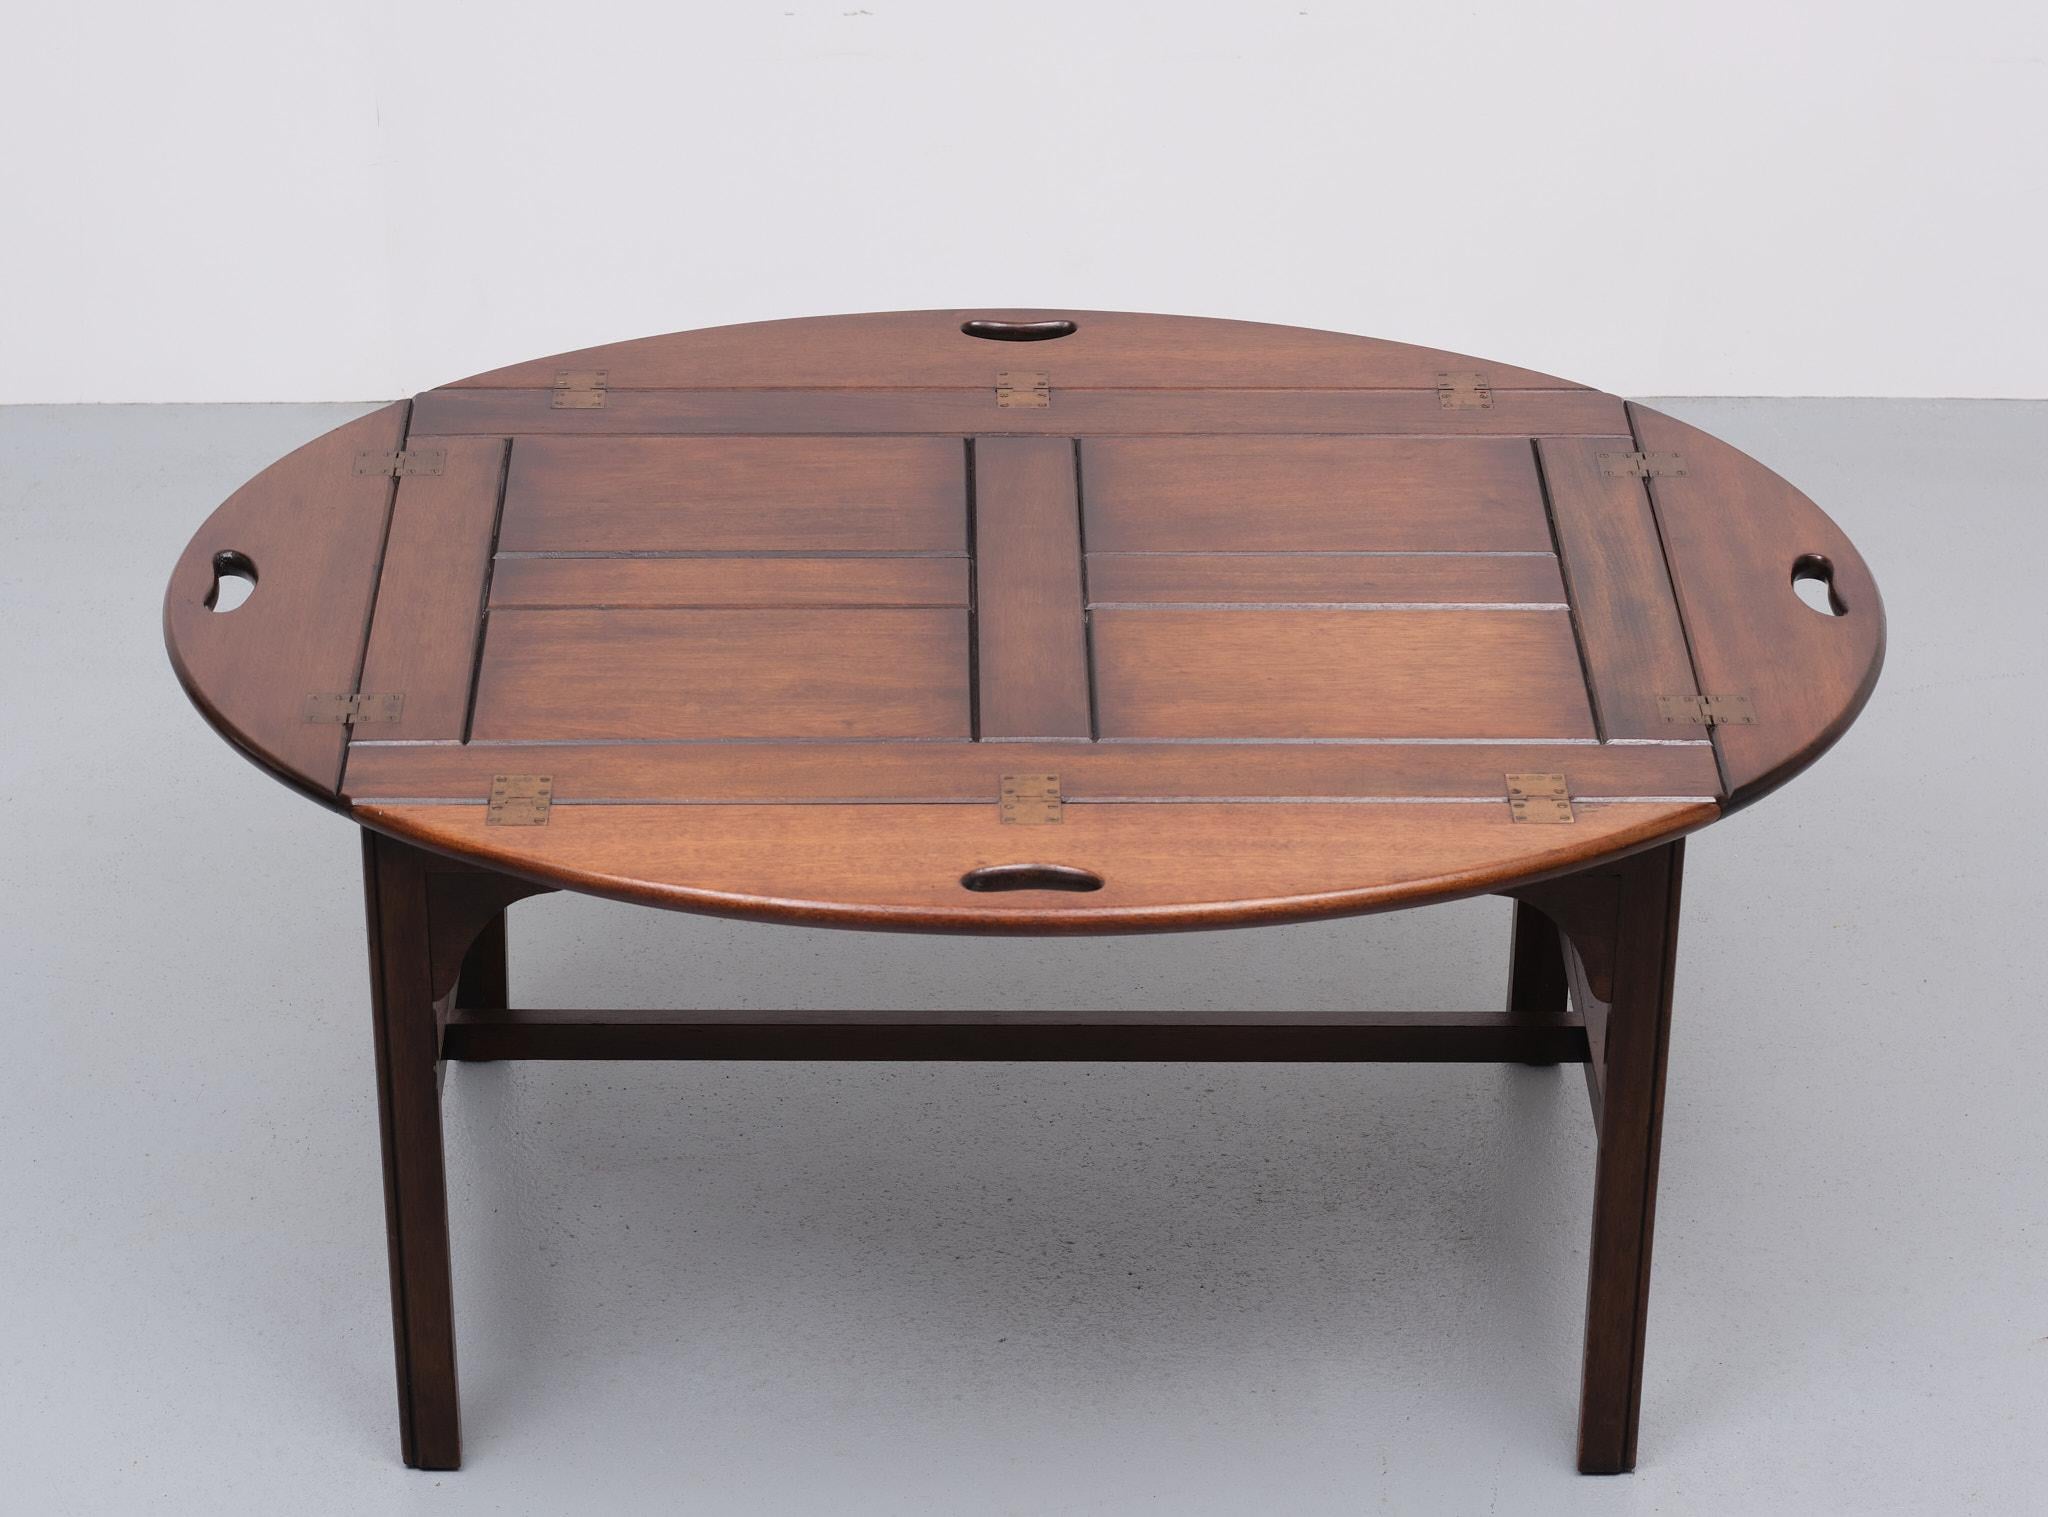 Sehr schöner klassischer Tabletttisch. Tick Tablett aus massivem Mahagoni. Passt perfekt auf den Tisch. Scharniere aus Messing. Tisch von guter Qualität. Hergestellt von Bevan Funnell England 1960er Jahre.